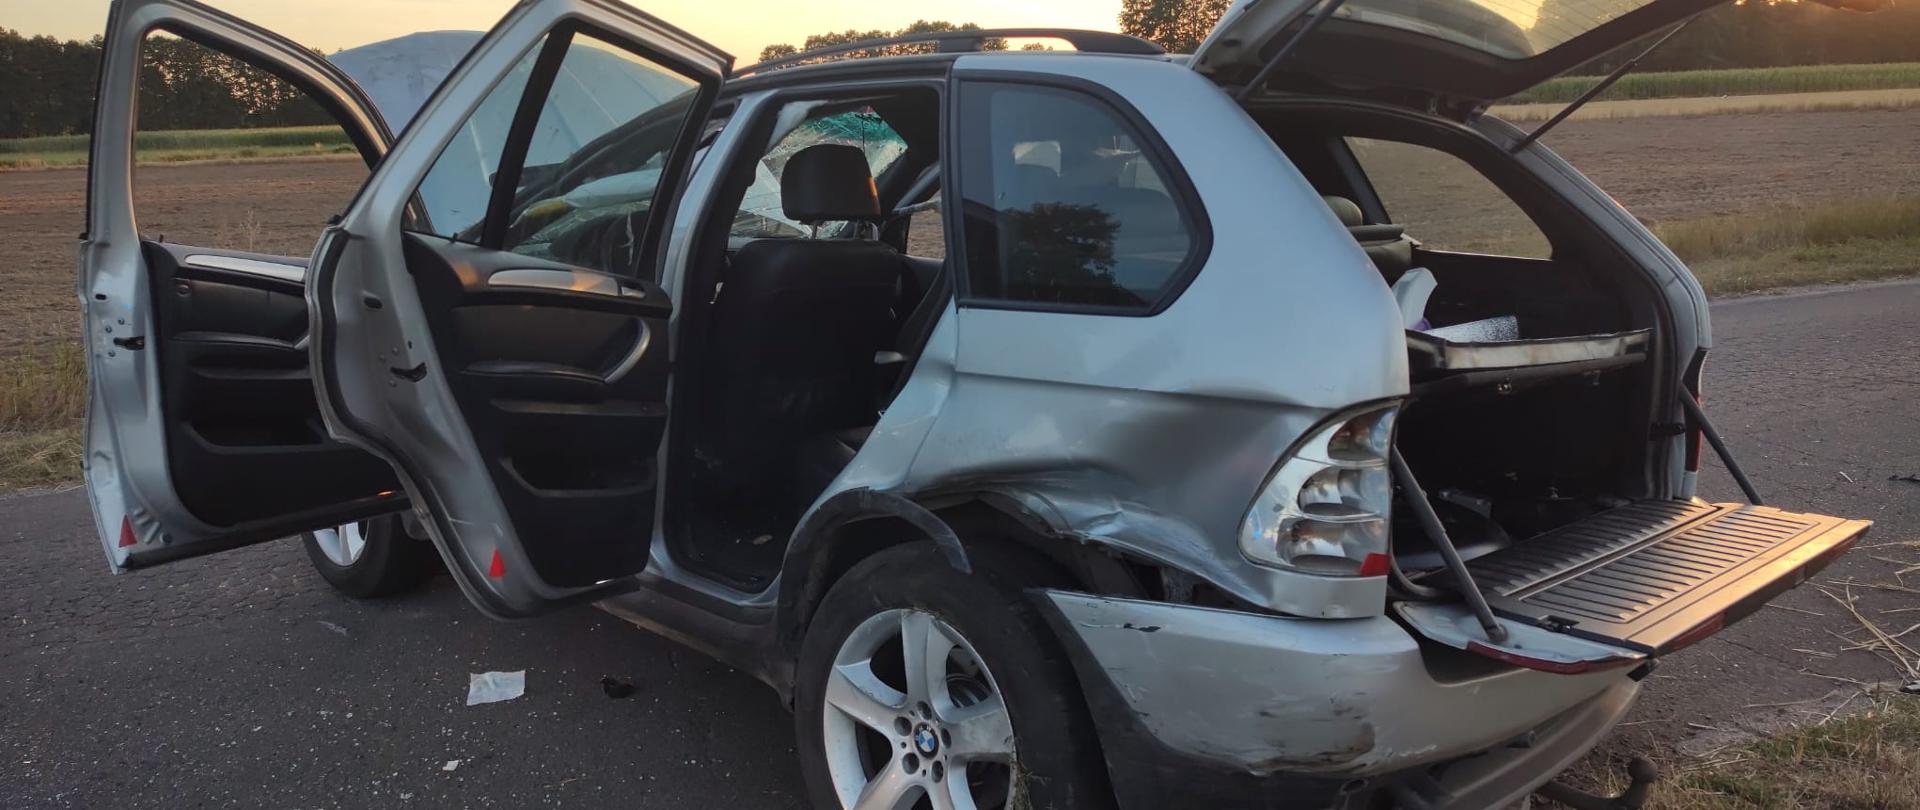 Zdjęcie przedstawia uszkodzony srebrny samochód osobowy